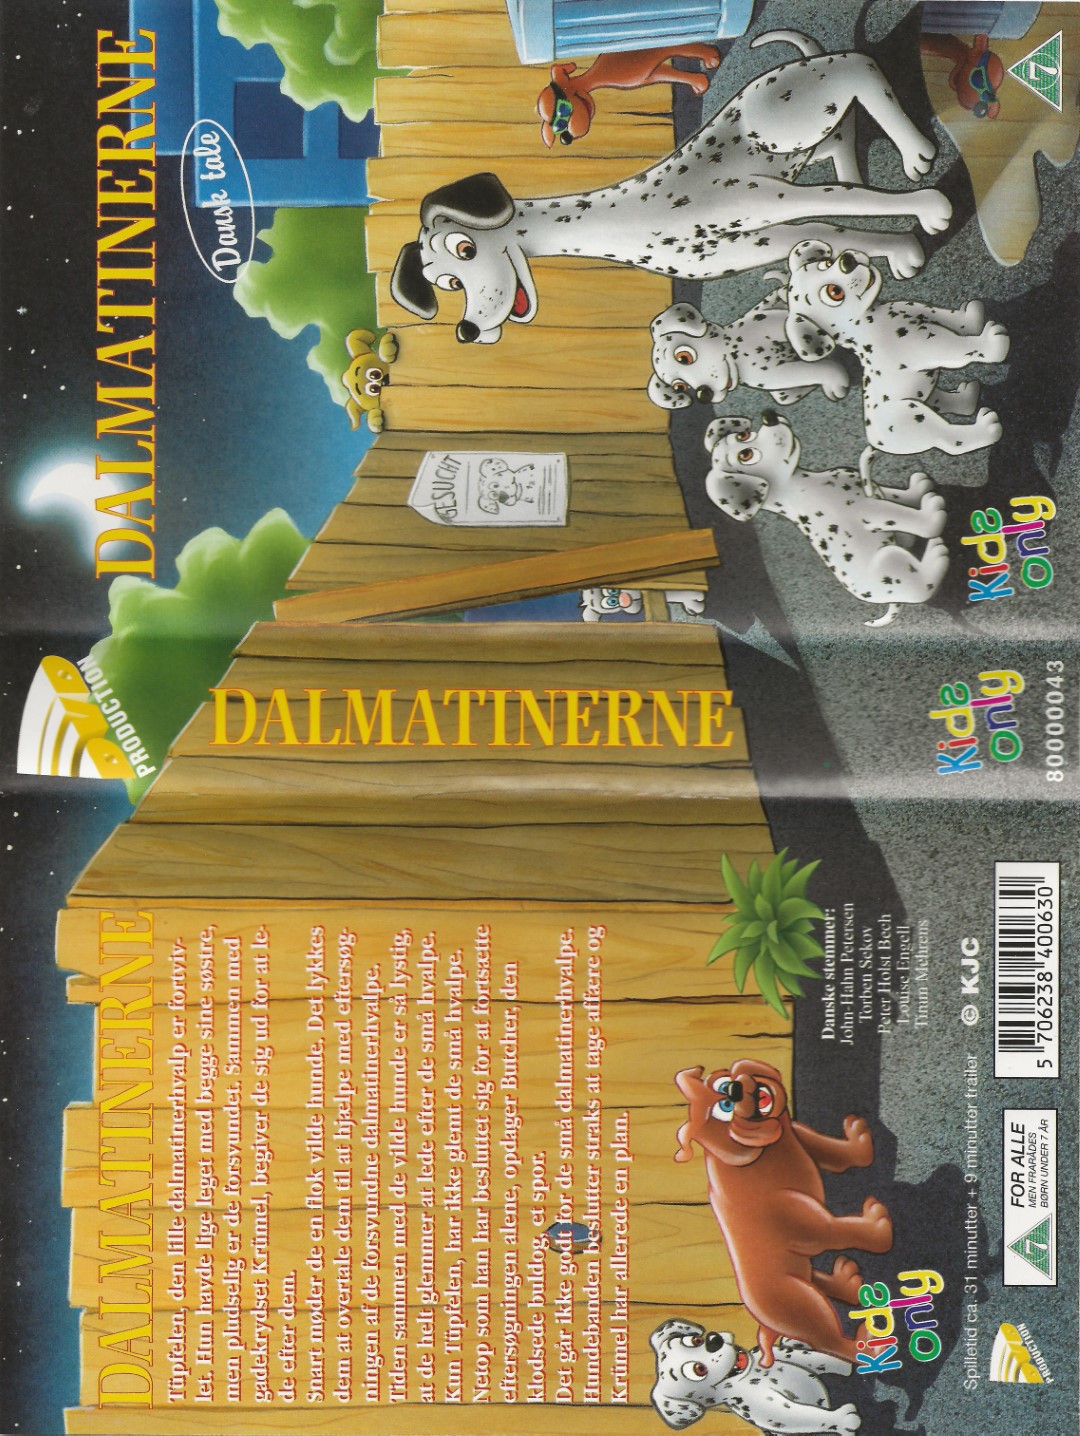 Dalmatinerne  VHS DVD - Dansk Video Distribution A/S 0